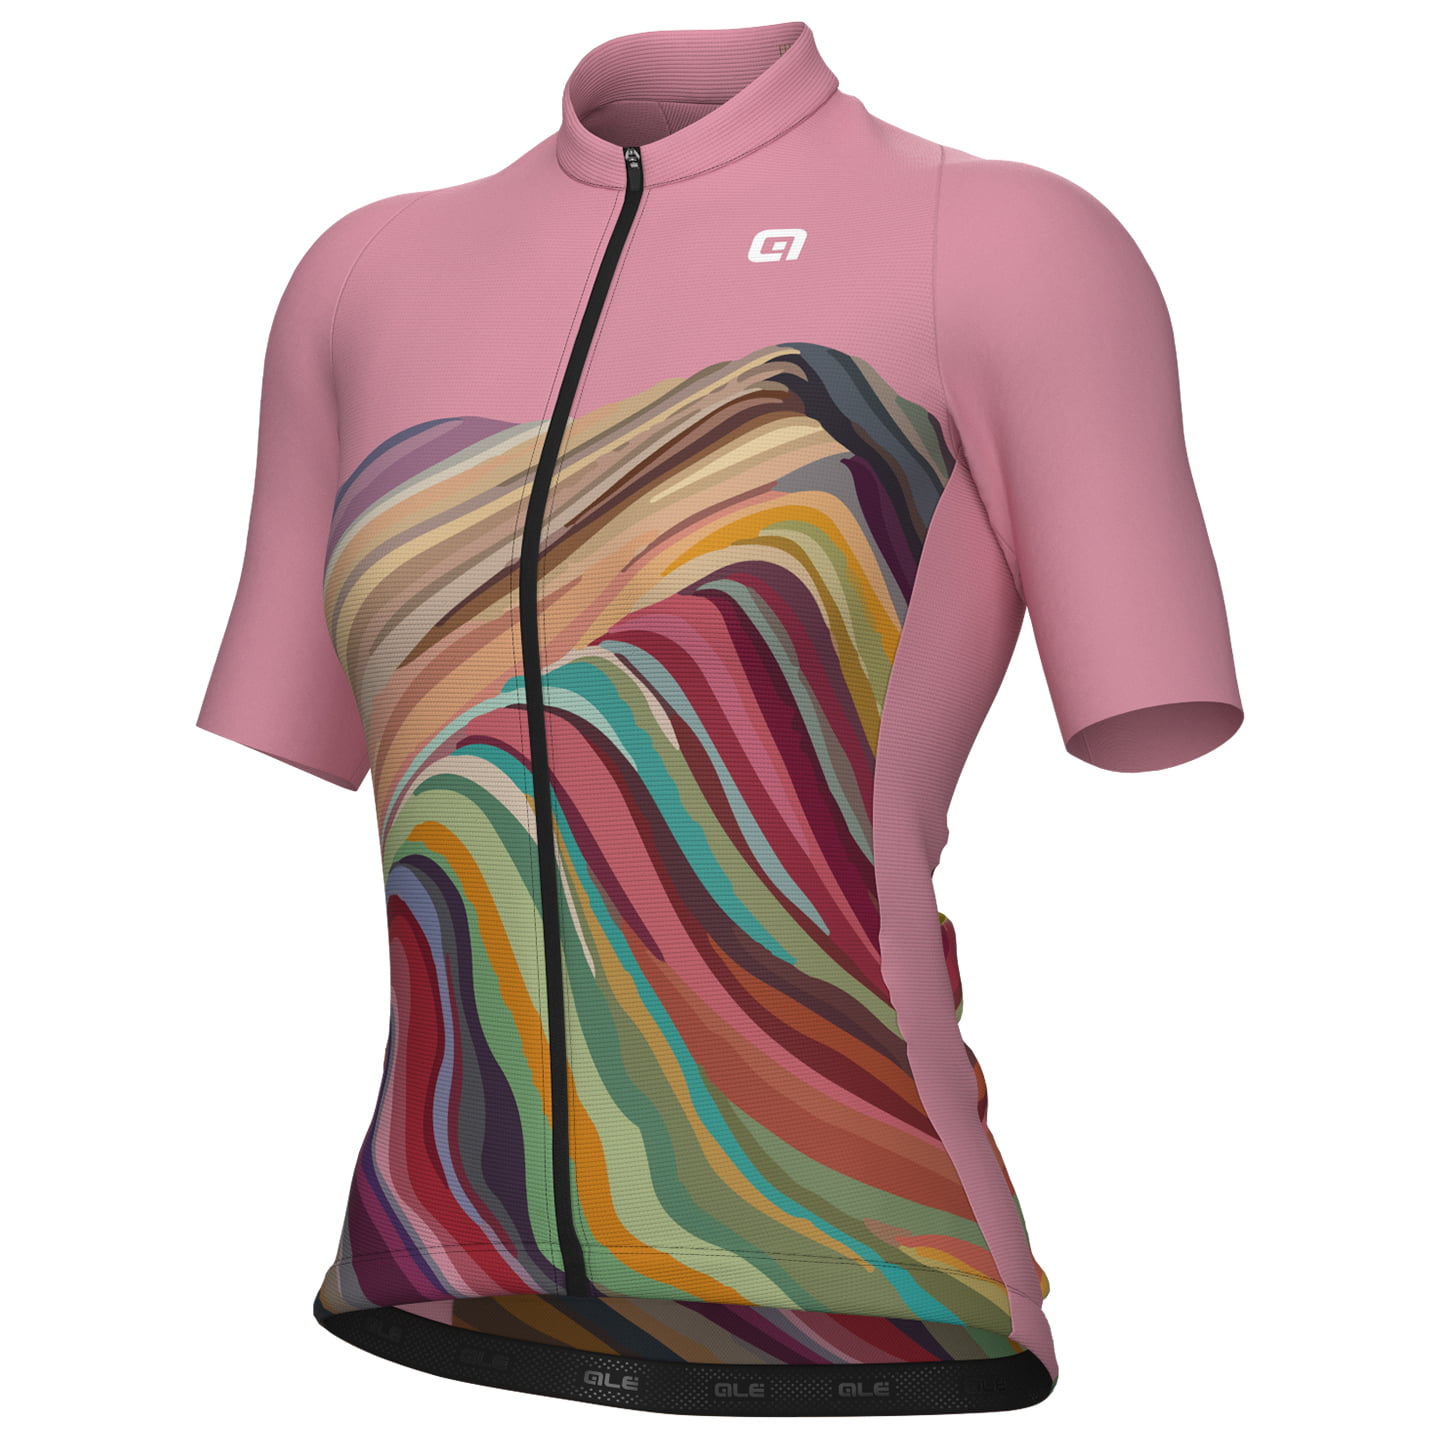 ALE Rainbow Women’s Short Sleeve Jersey Women’s Short Sleeve Jersey, size S, Cycling jersey, Cycle gear